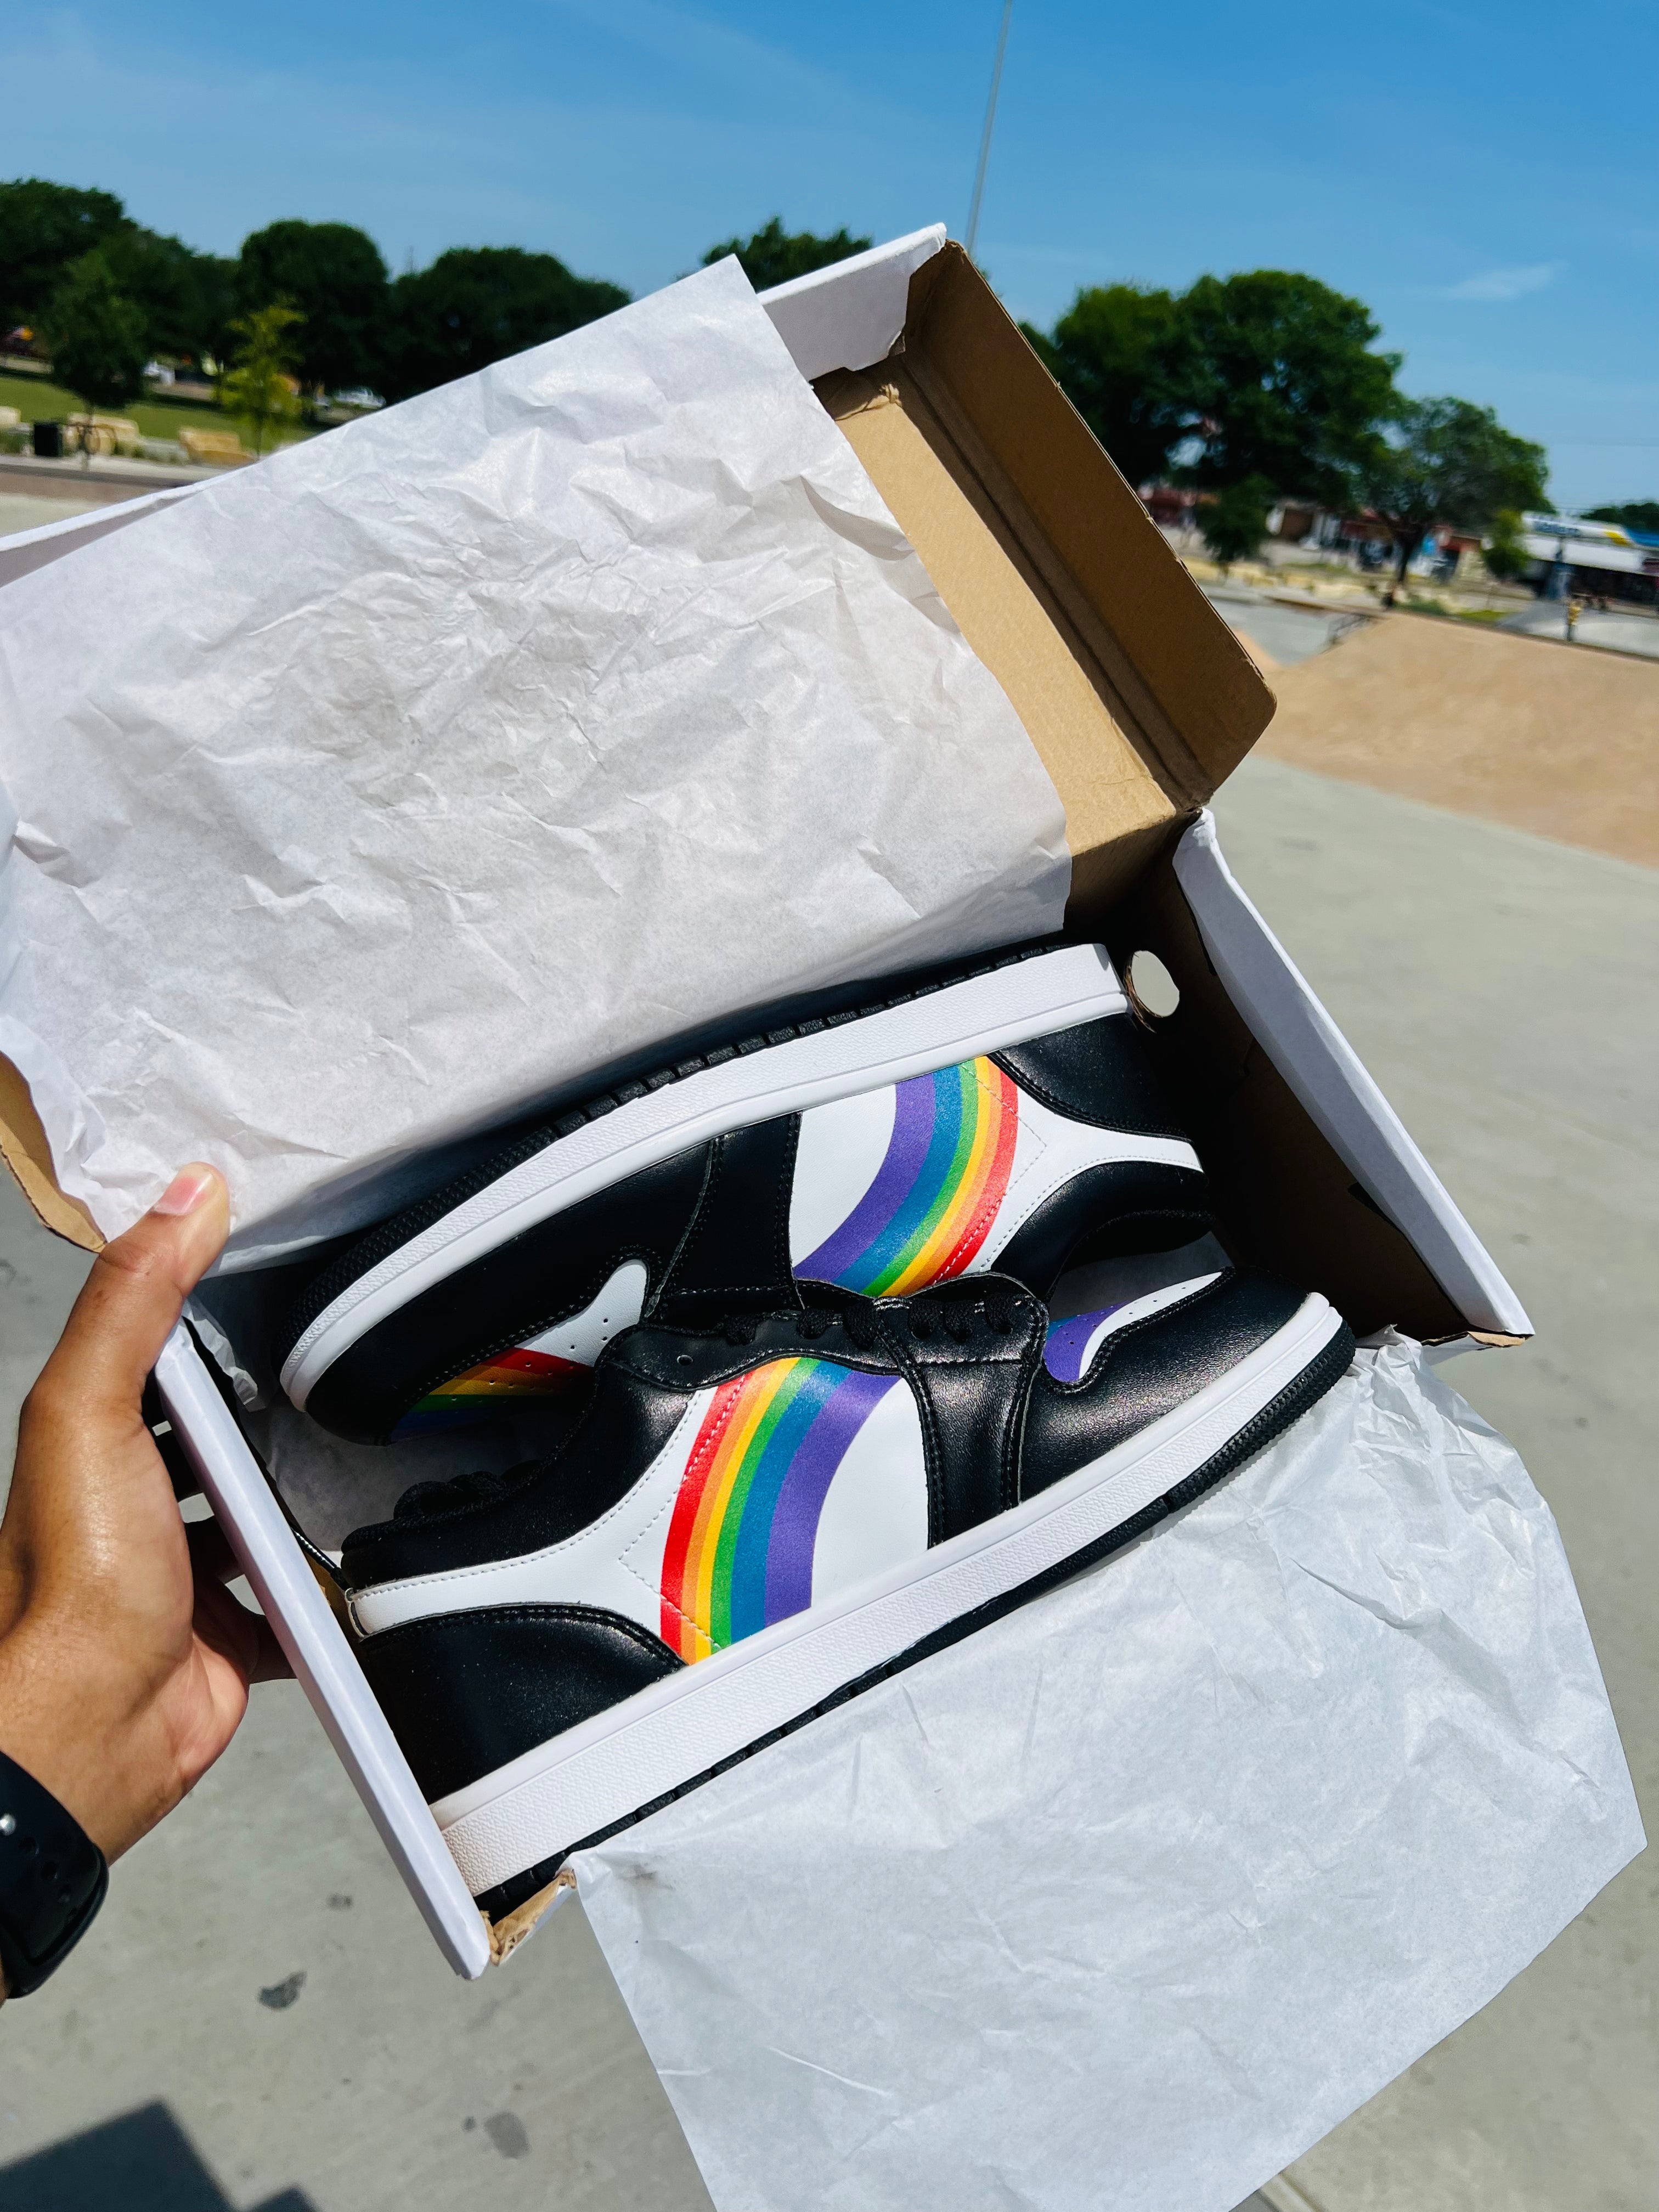 Rainbow LGBT Pride Low Top Unisex Sneakers